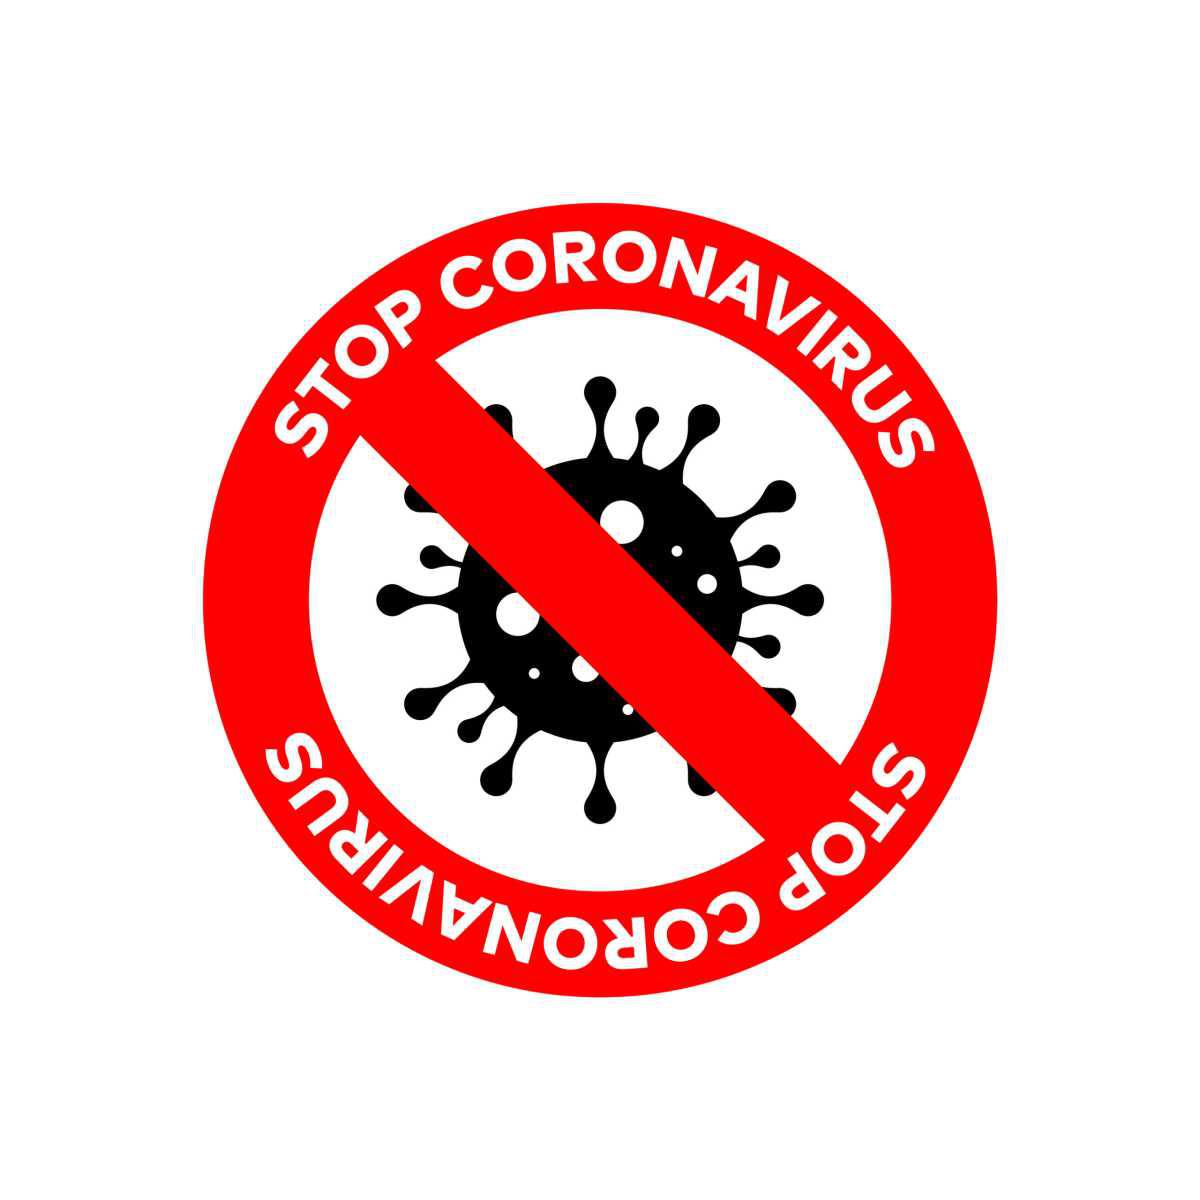 [Enedis] Coronavirus : La santé des salariés avant tout